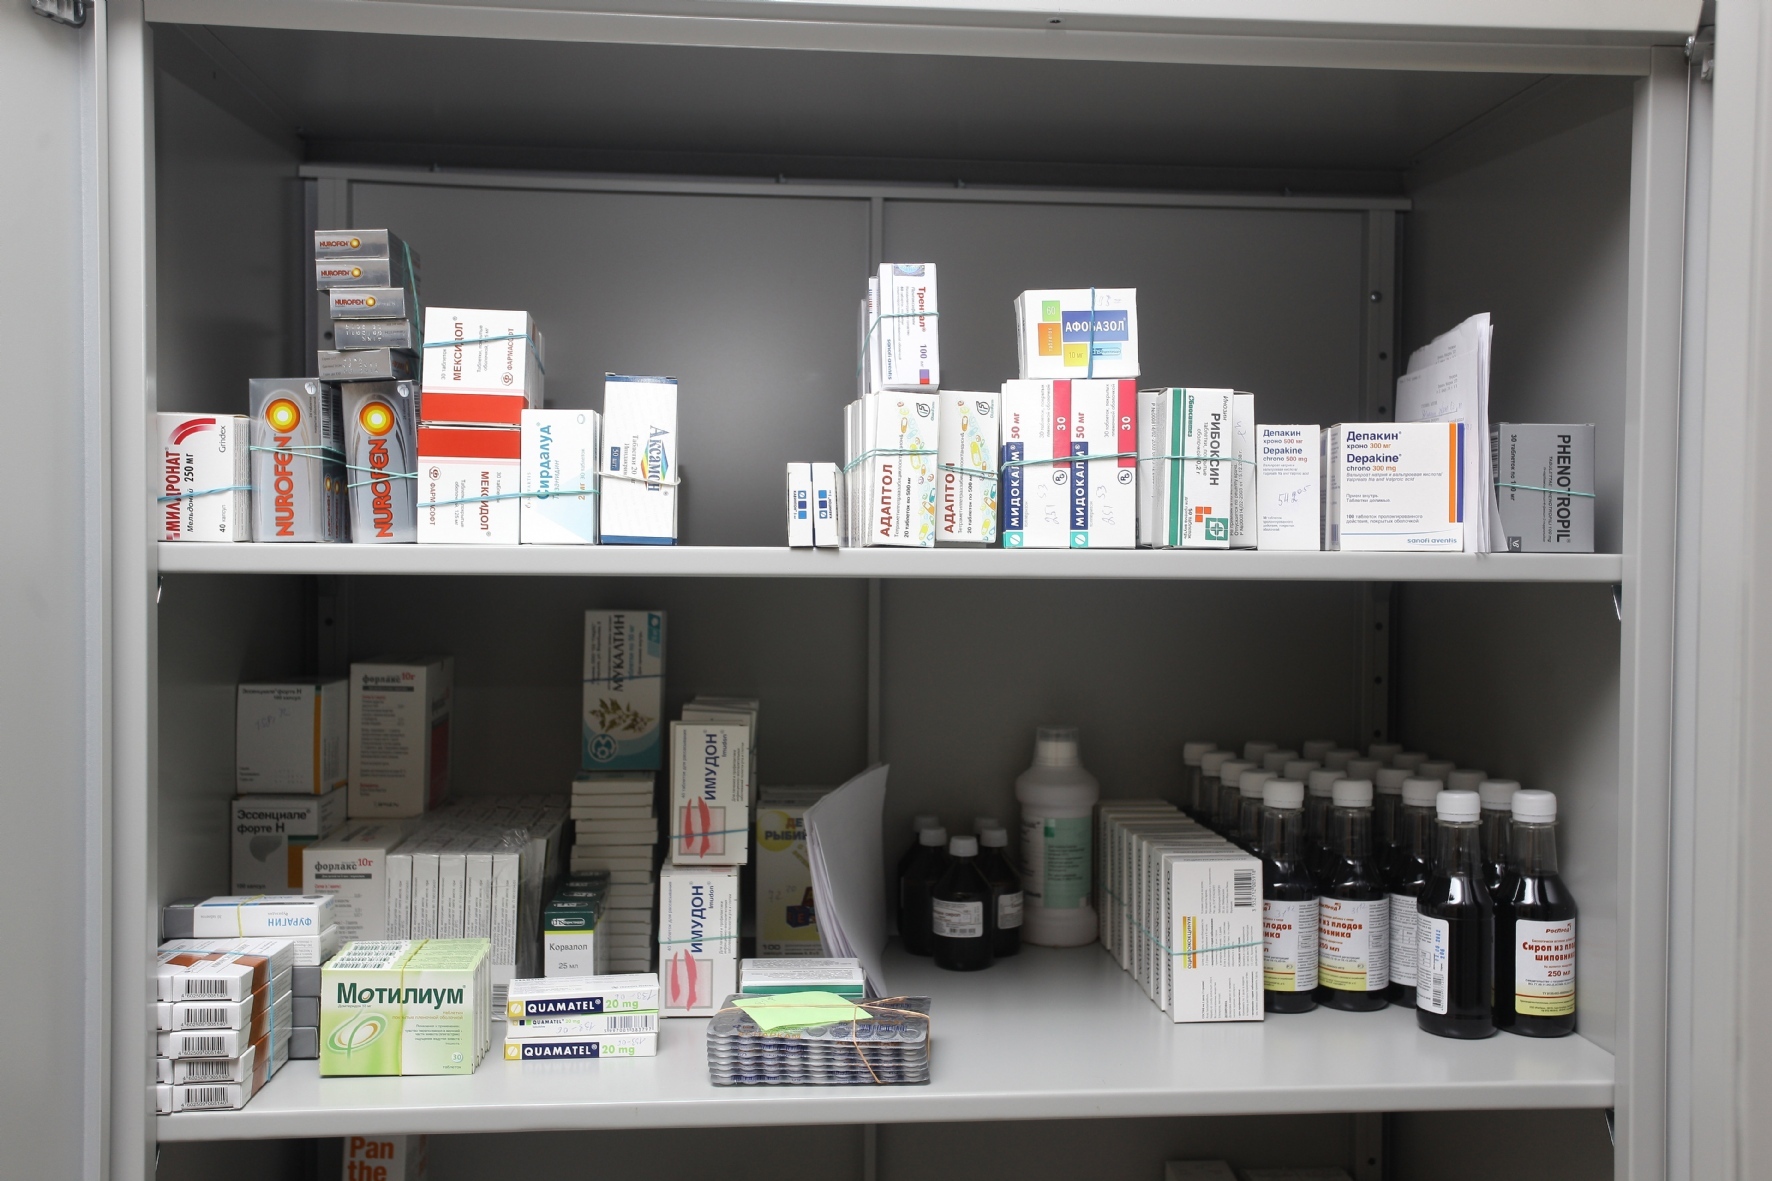 Лс в наличии. Шкаф для лекарств. Полки для лекарственных препаратов. Места хранения в аптеке. Лекарственные препараты в аптеке.